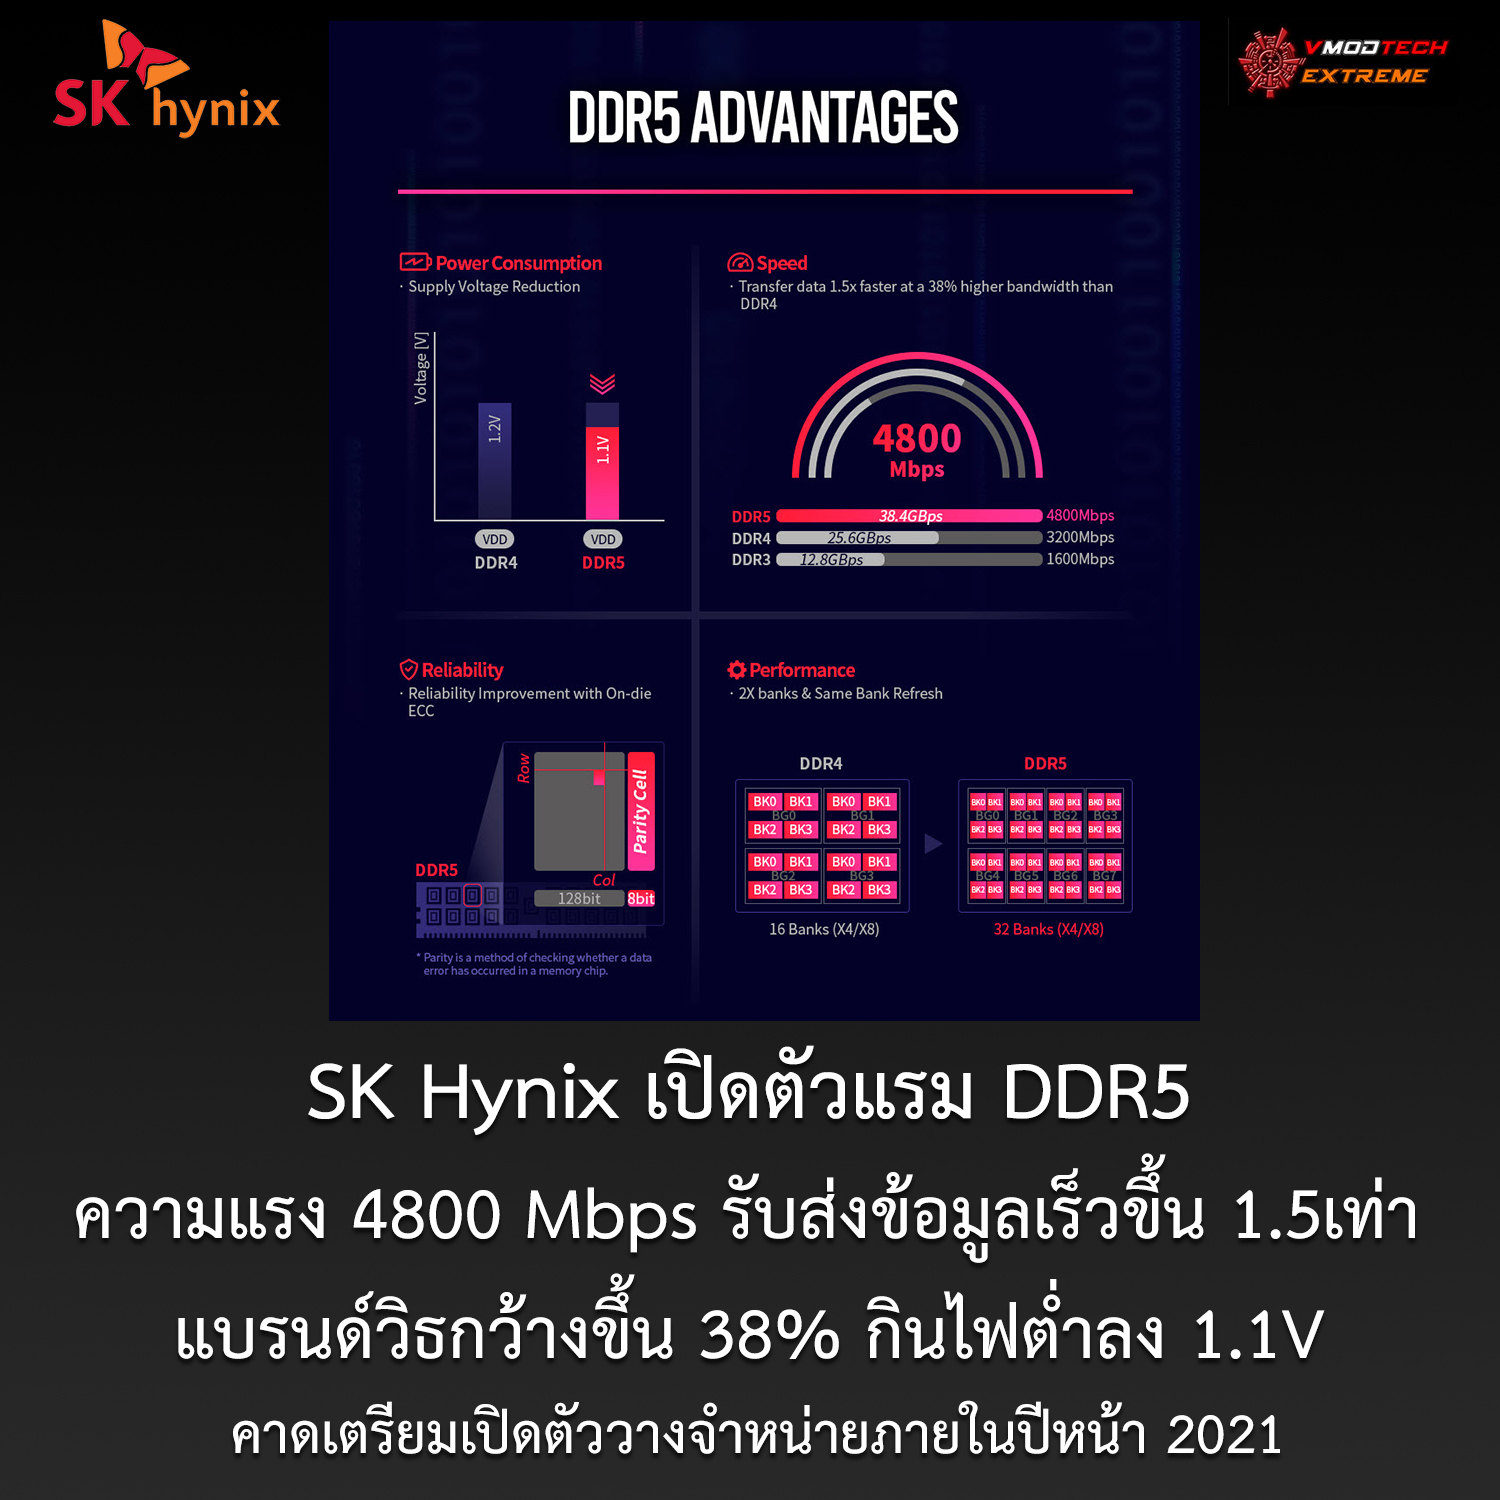 sk hynix ddr5 SK Hynix เปิดตัวแรม DDR5 กับความแรง 4800Mbps รับส่งข้อมูลเร็วขึ้น 1.5เท่ากินไฟต่ำลงคาดเตรียมเปิดตัววางจำหน่ายภายในปีหน้า 2021